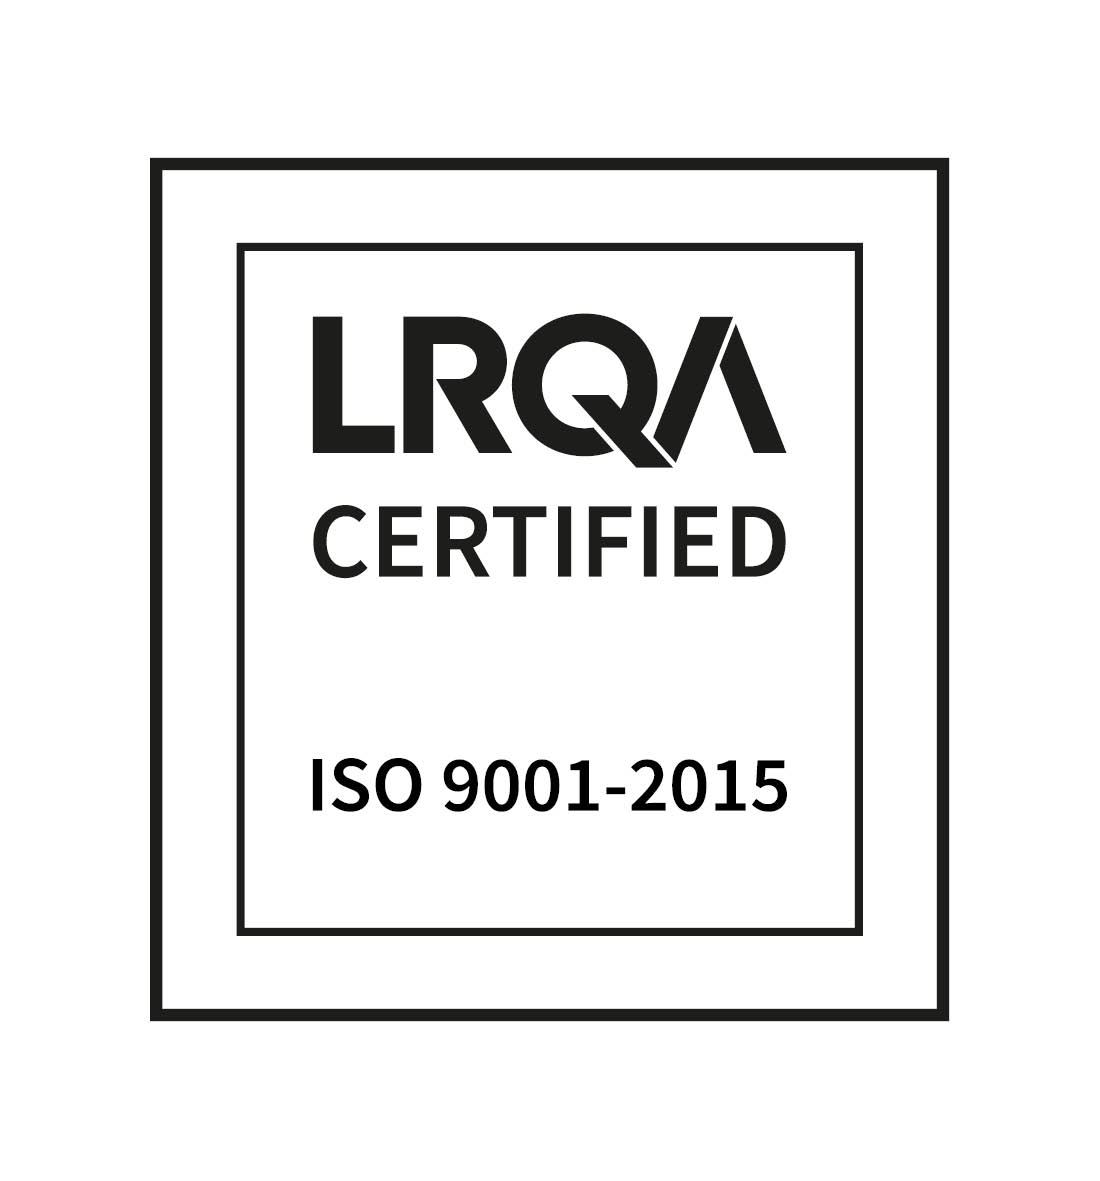 Office notarial certifié Iso 9001 par LRQA